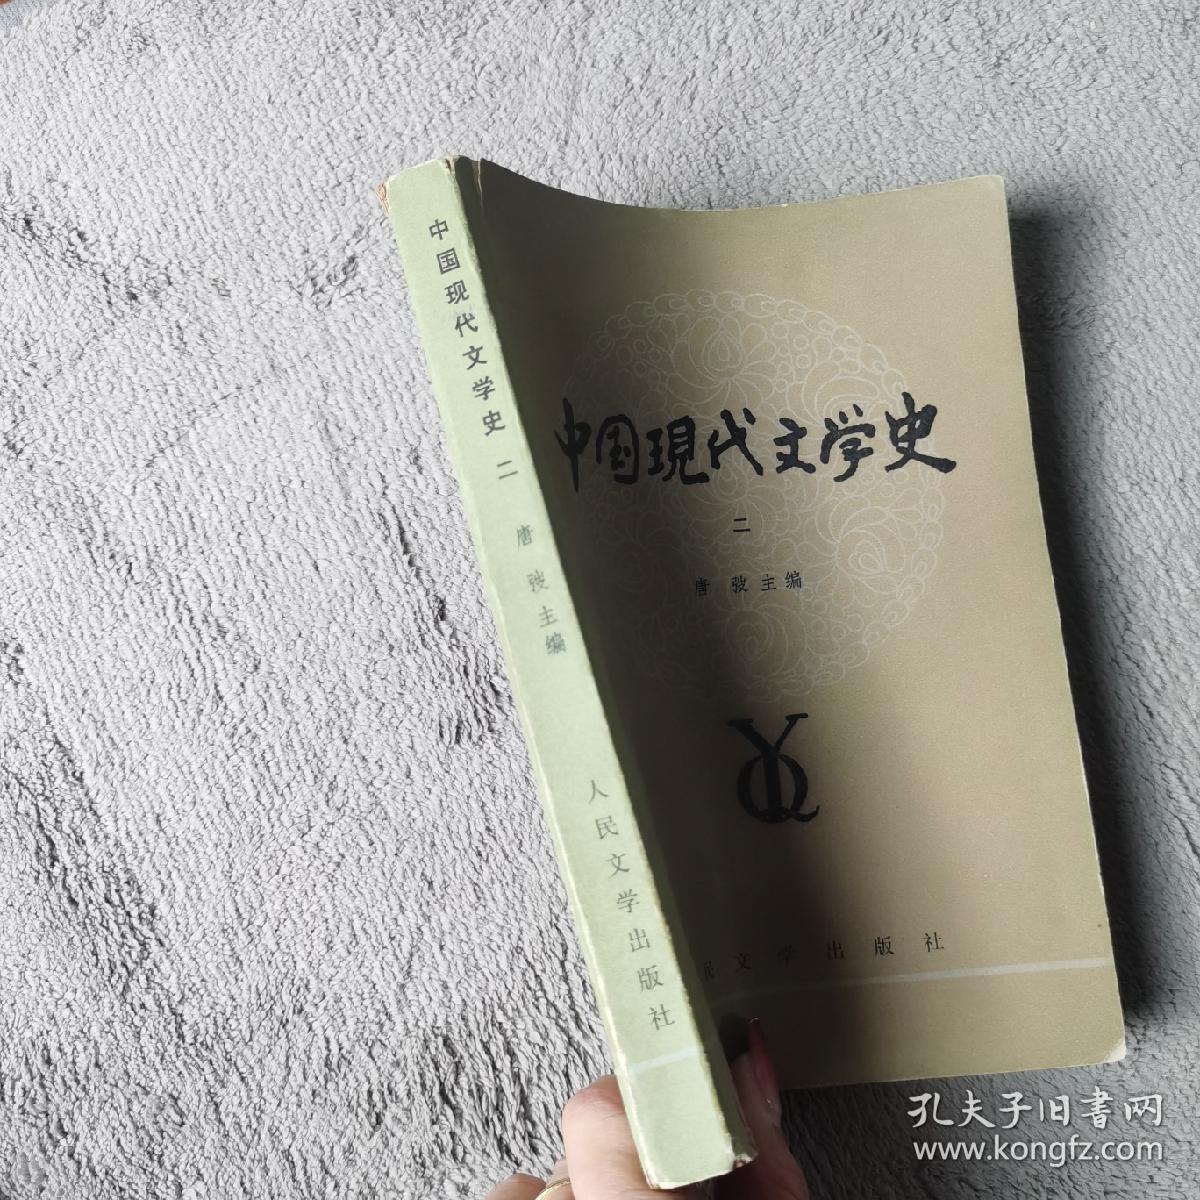 中国现代文学史  二